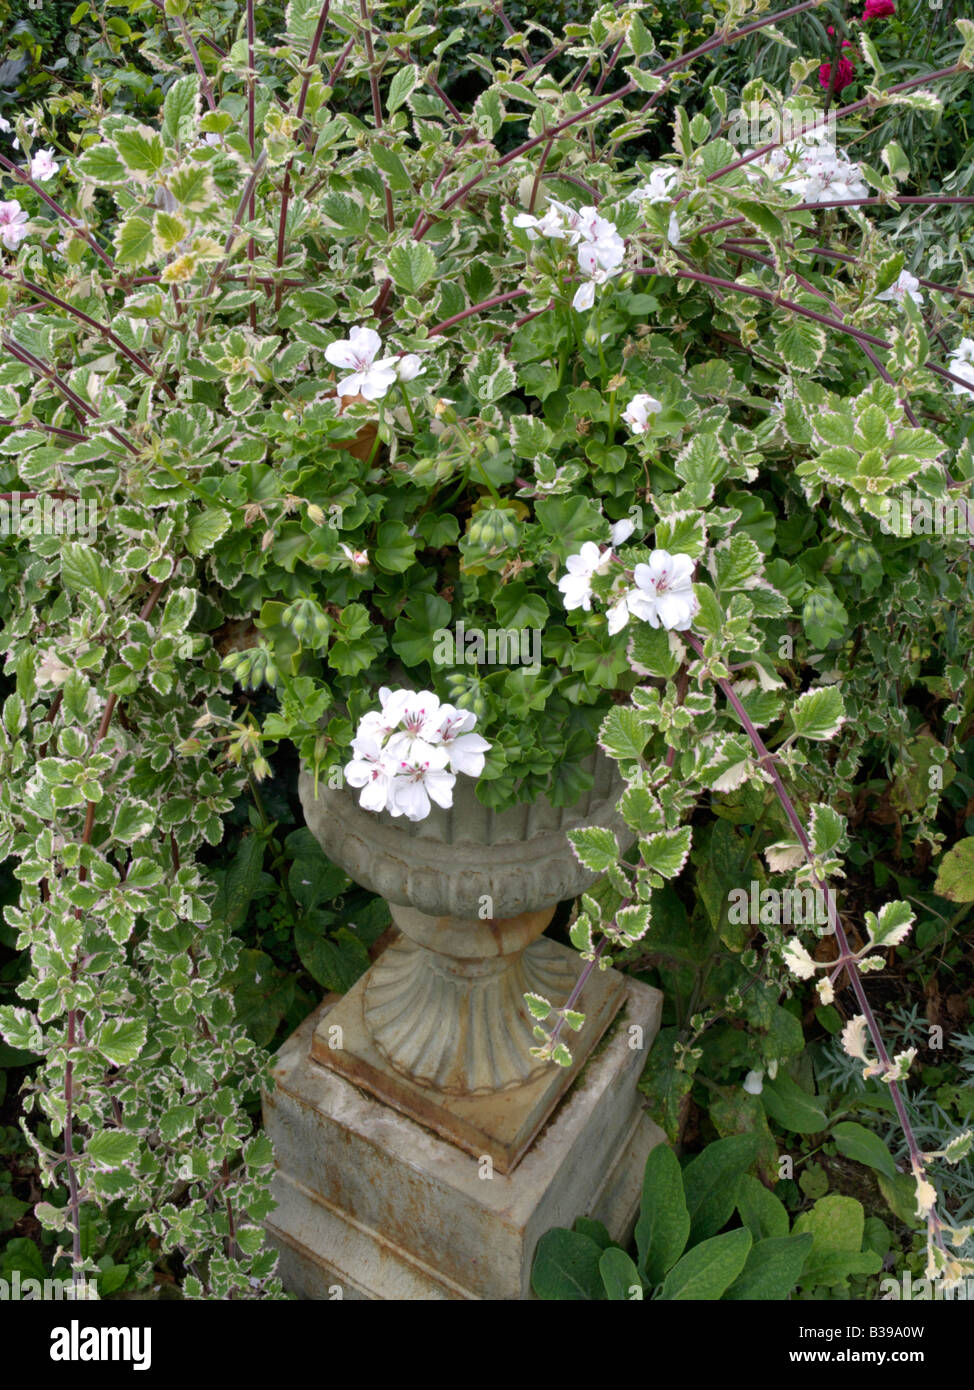 Pelargonium (Pelargonium) and Swedish ivy (Plectranthus forsteri 'Marginatus' syn. Plectranthus coleoides 'Marginatus') Stock Photo